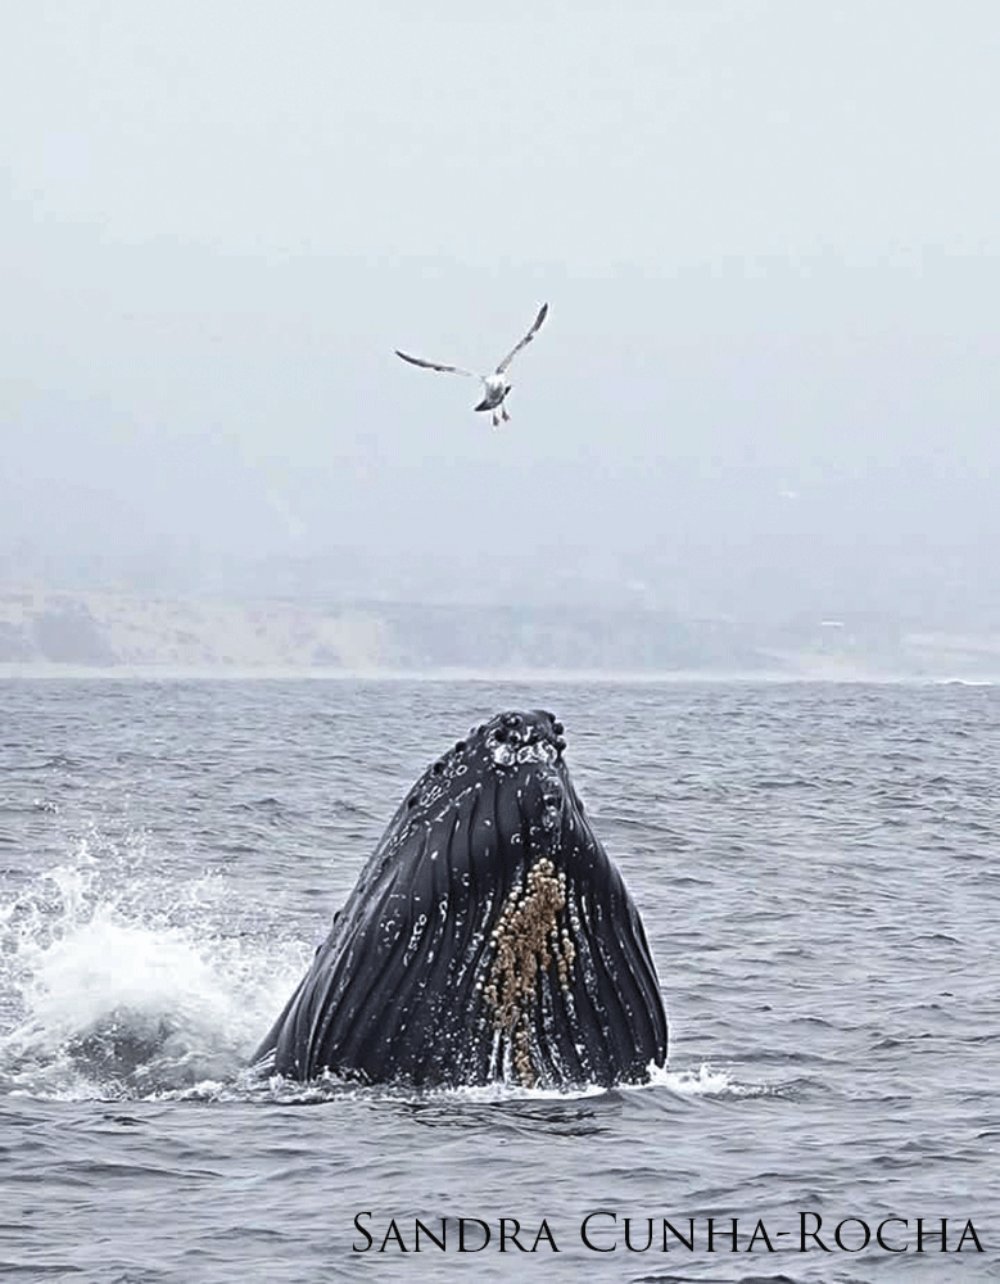 Humpback whale breaching as a gull flies overhead.